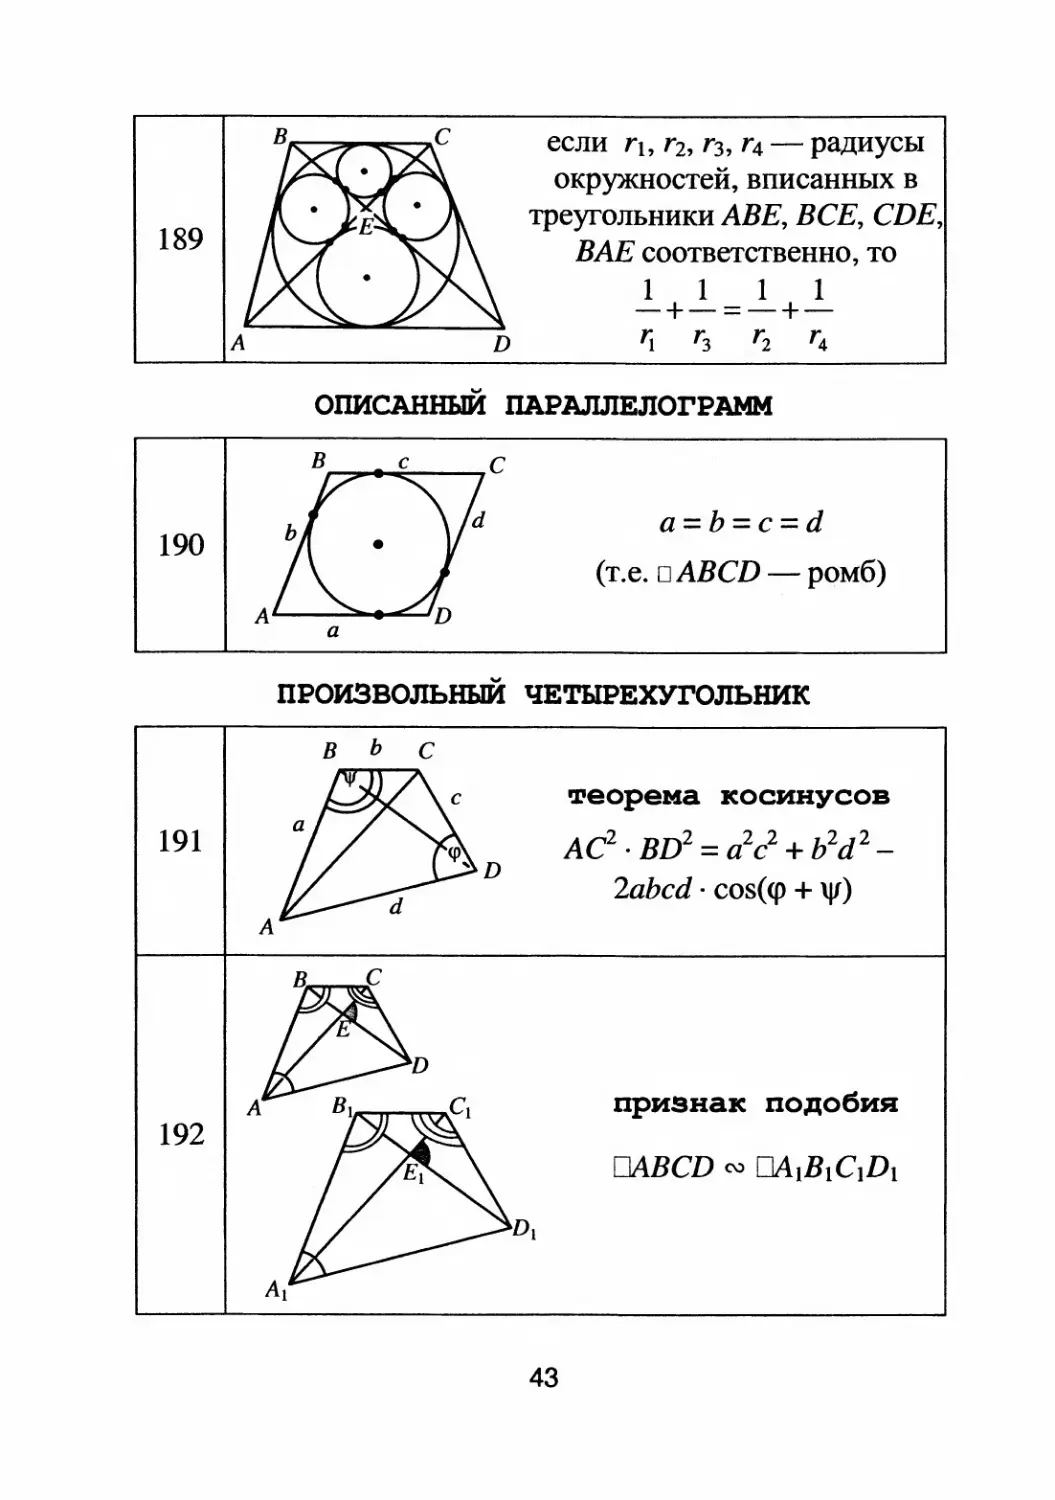 Описанный параллелограмм. Произвольный четырёхугольник